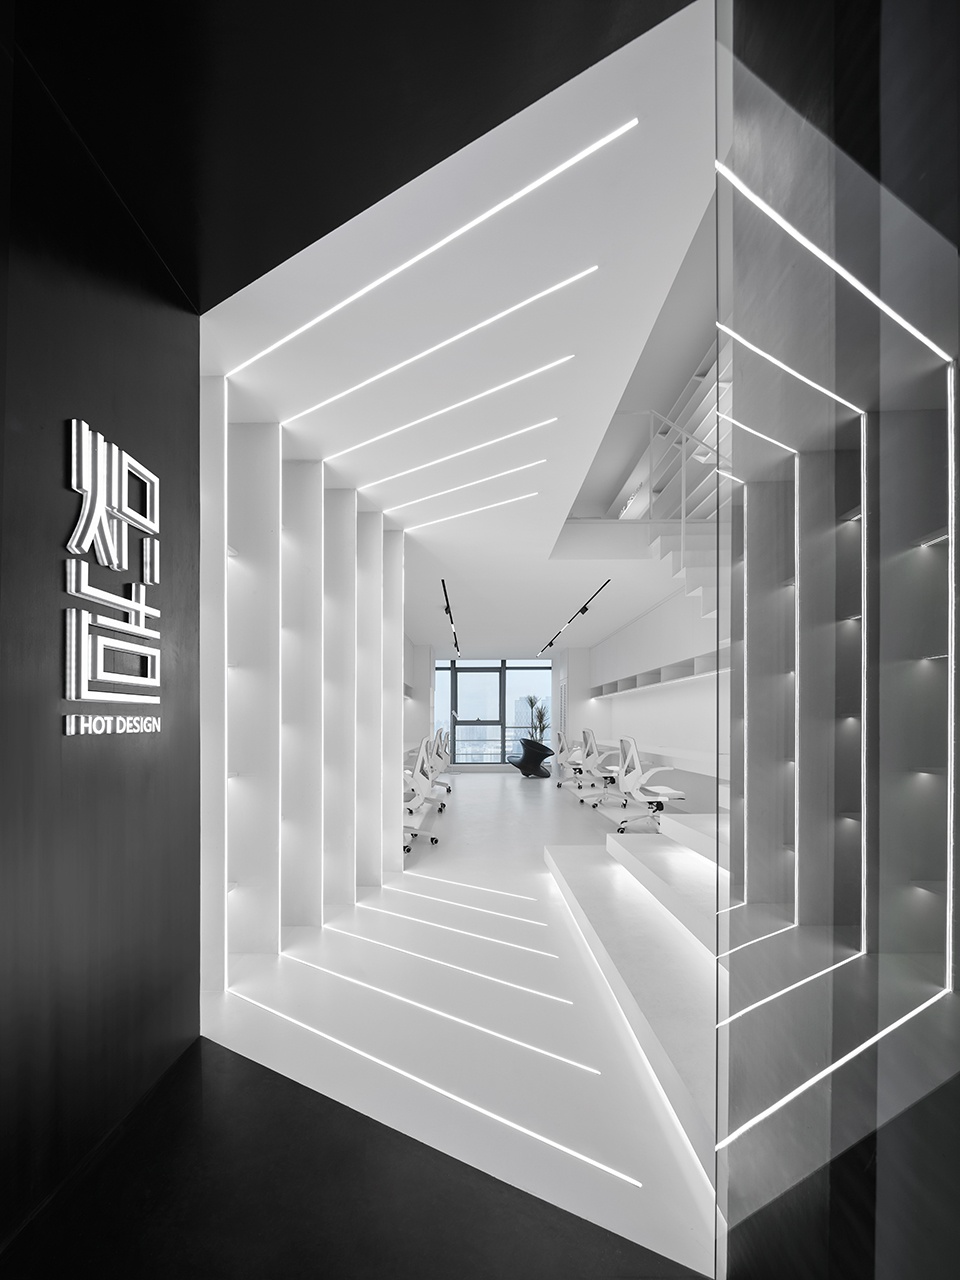 办公室设计,设计公司办公室设计,办公空间设计,开放式办公室设计,上海办公室设计,上海设计工作办公室设计,办公室设计案例,炽造设计工作室,炽造设计,H.O.T Design炽造设计